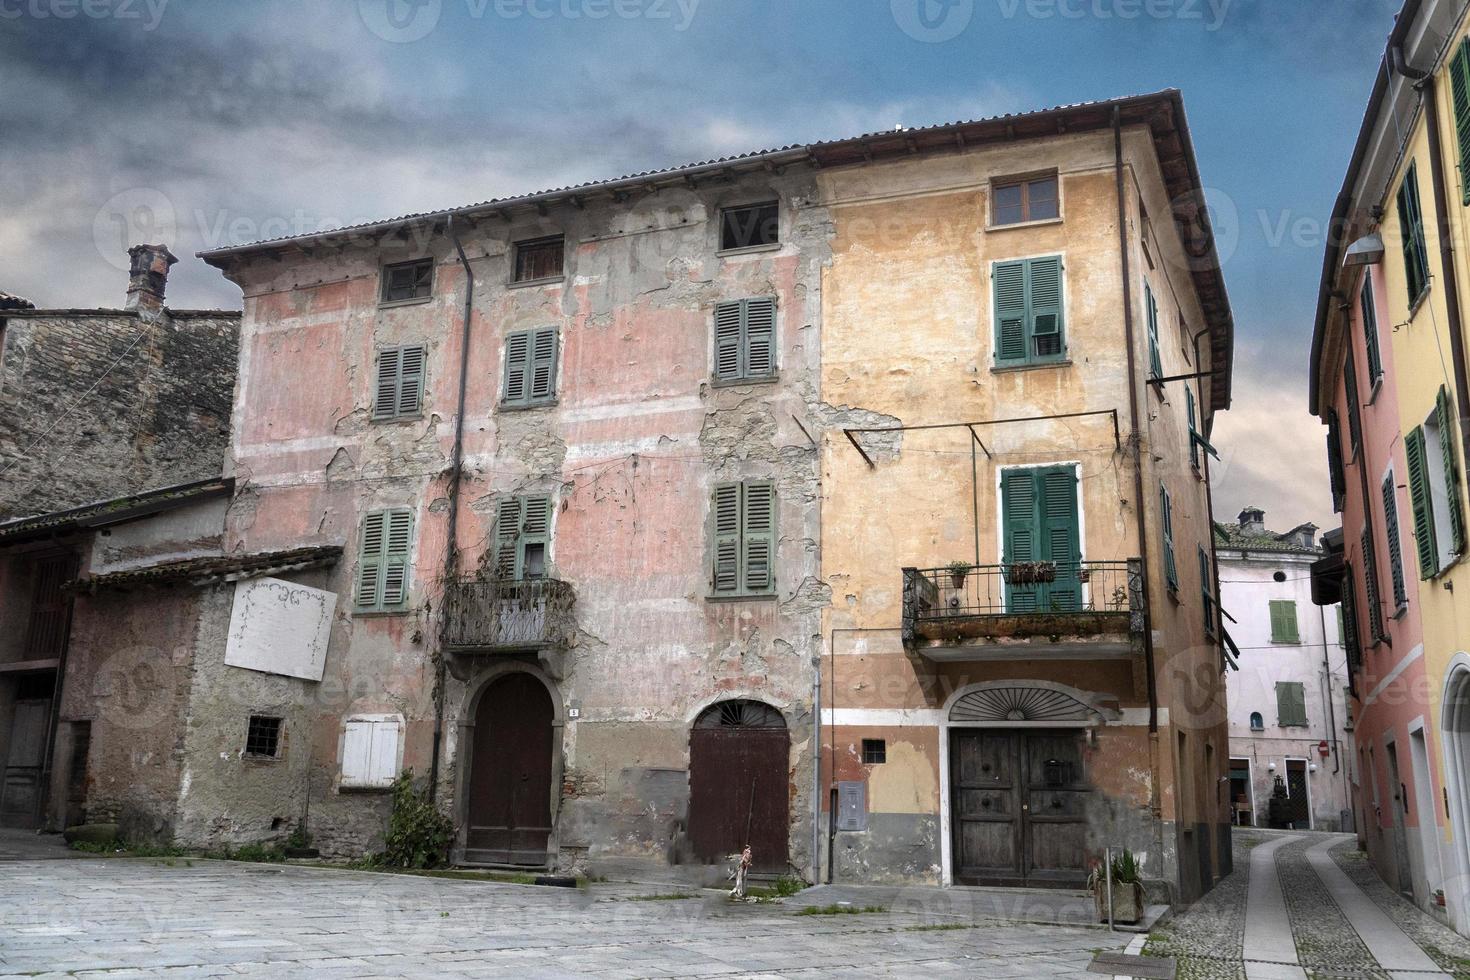 garbagna pueblo medieval italiano foto